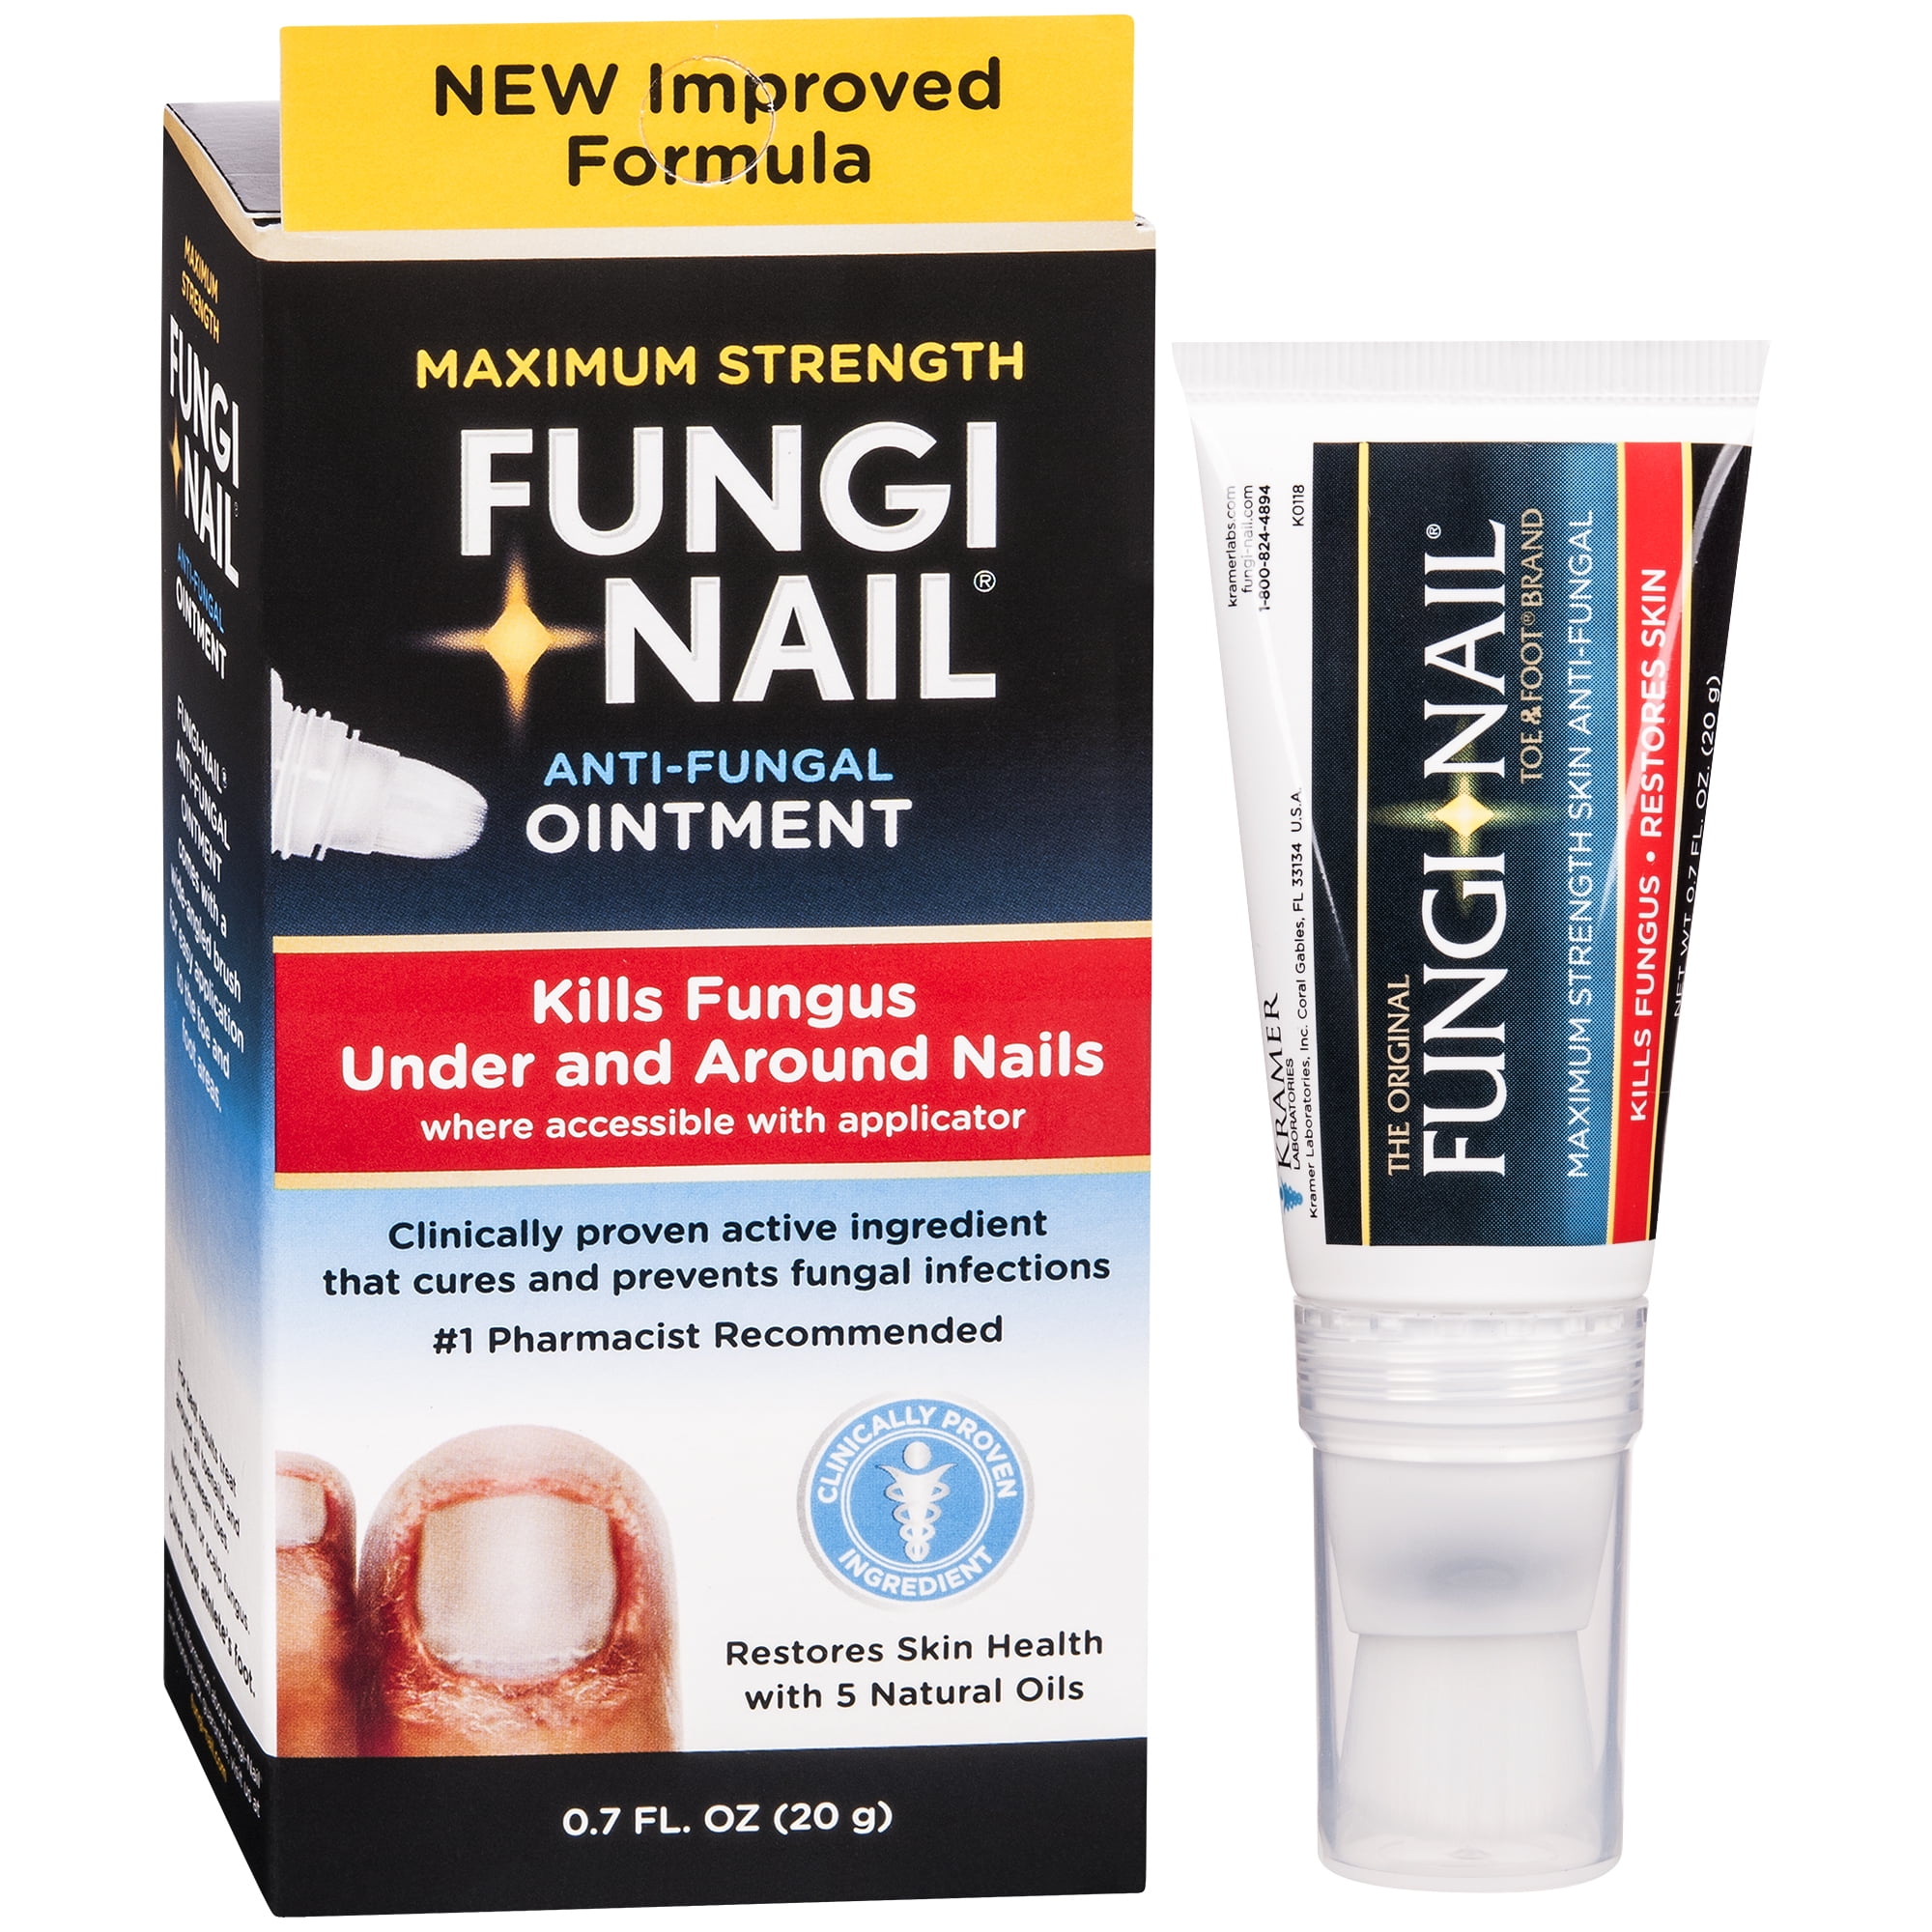 Fungi-Nail | Fungi-Nail Reviews of Products